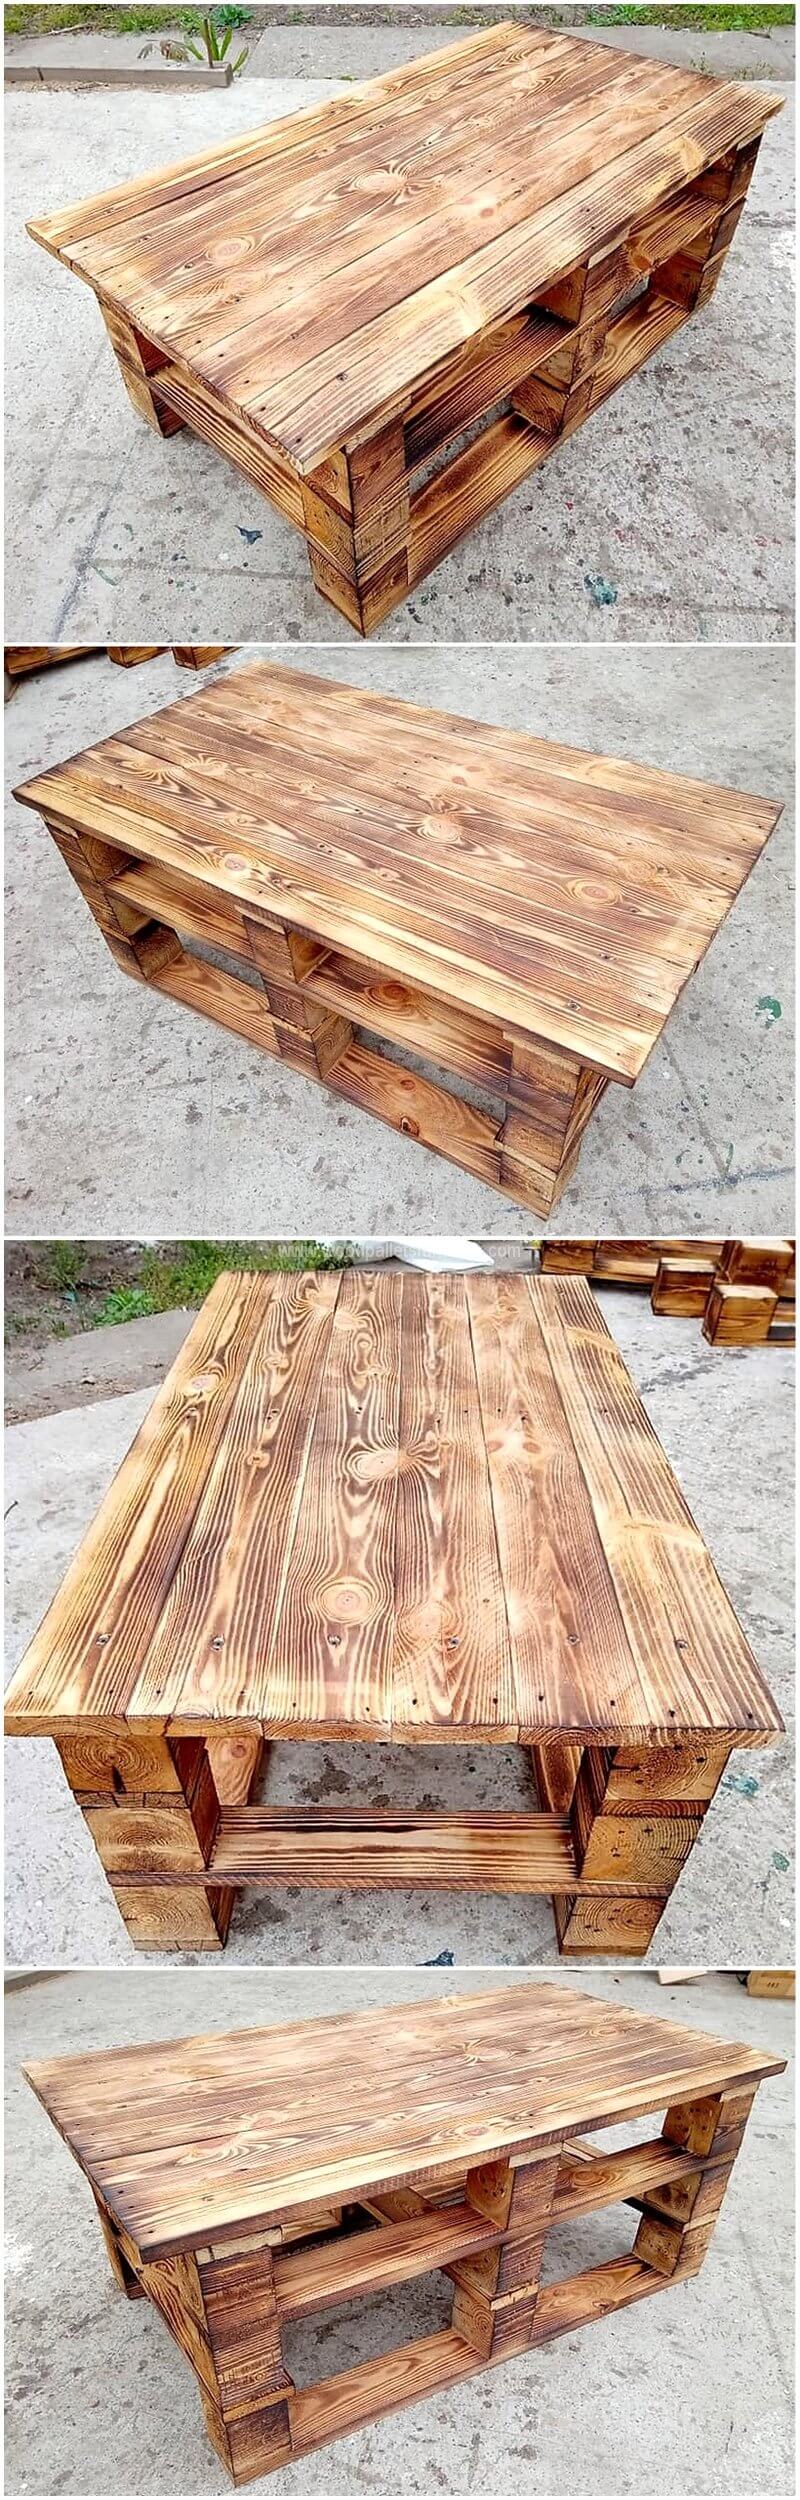 simple rustic look pallet table